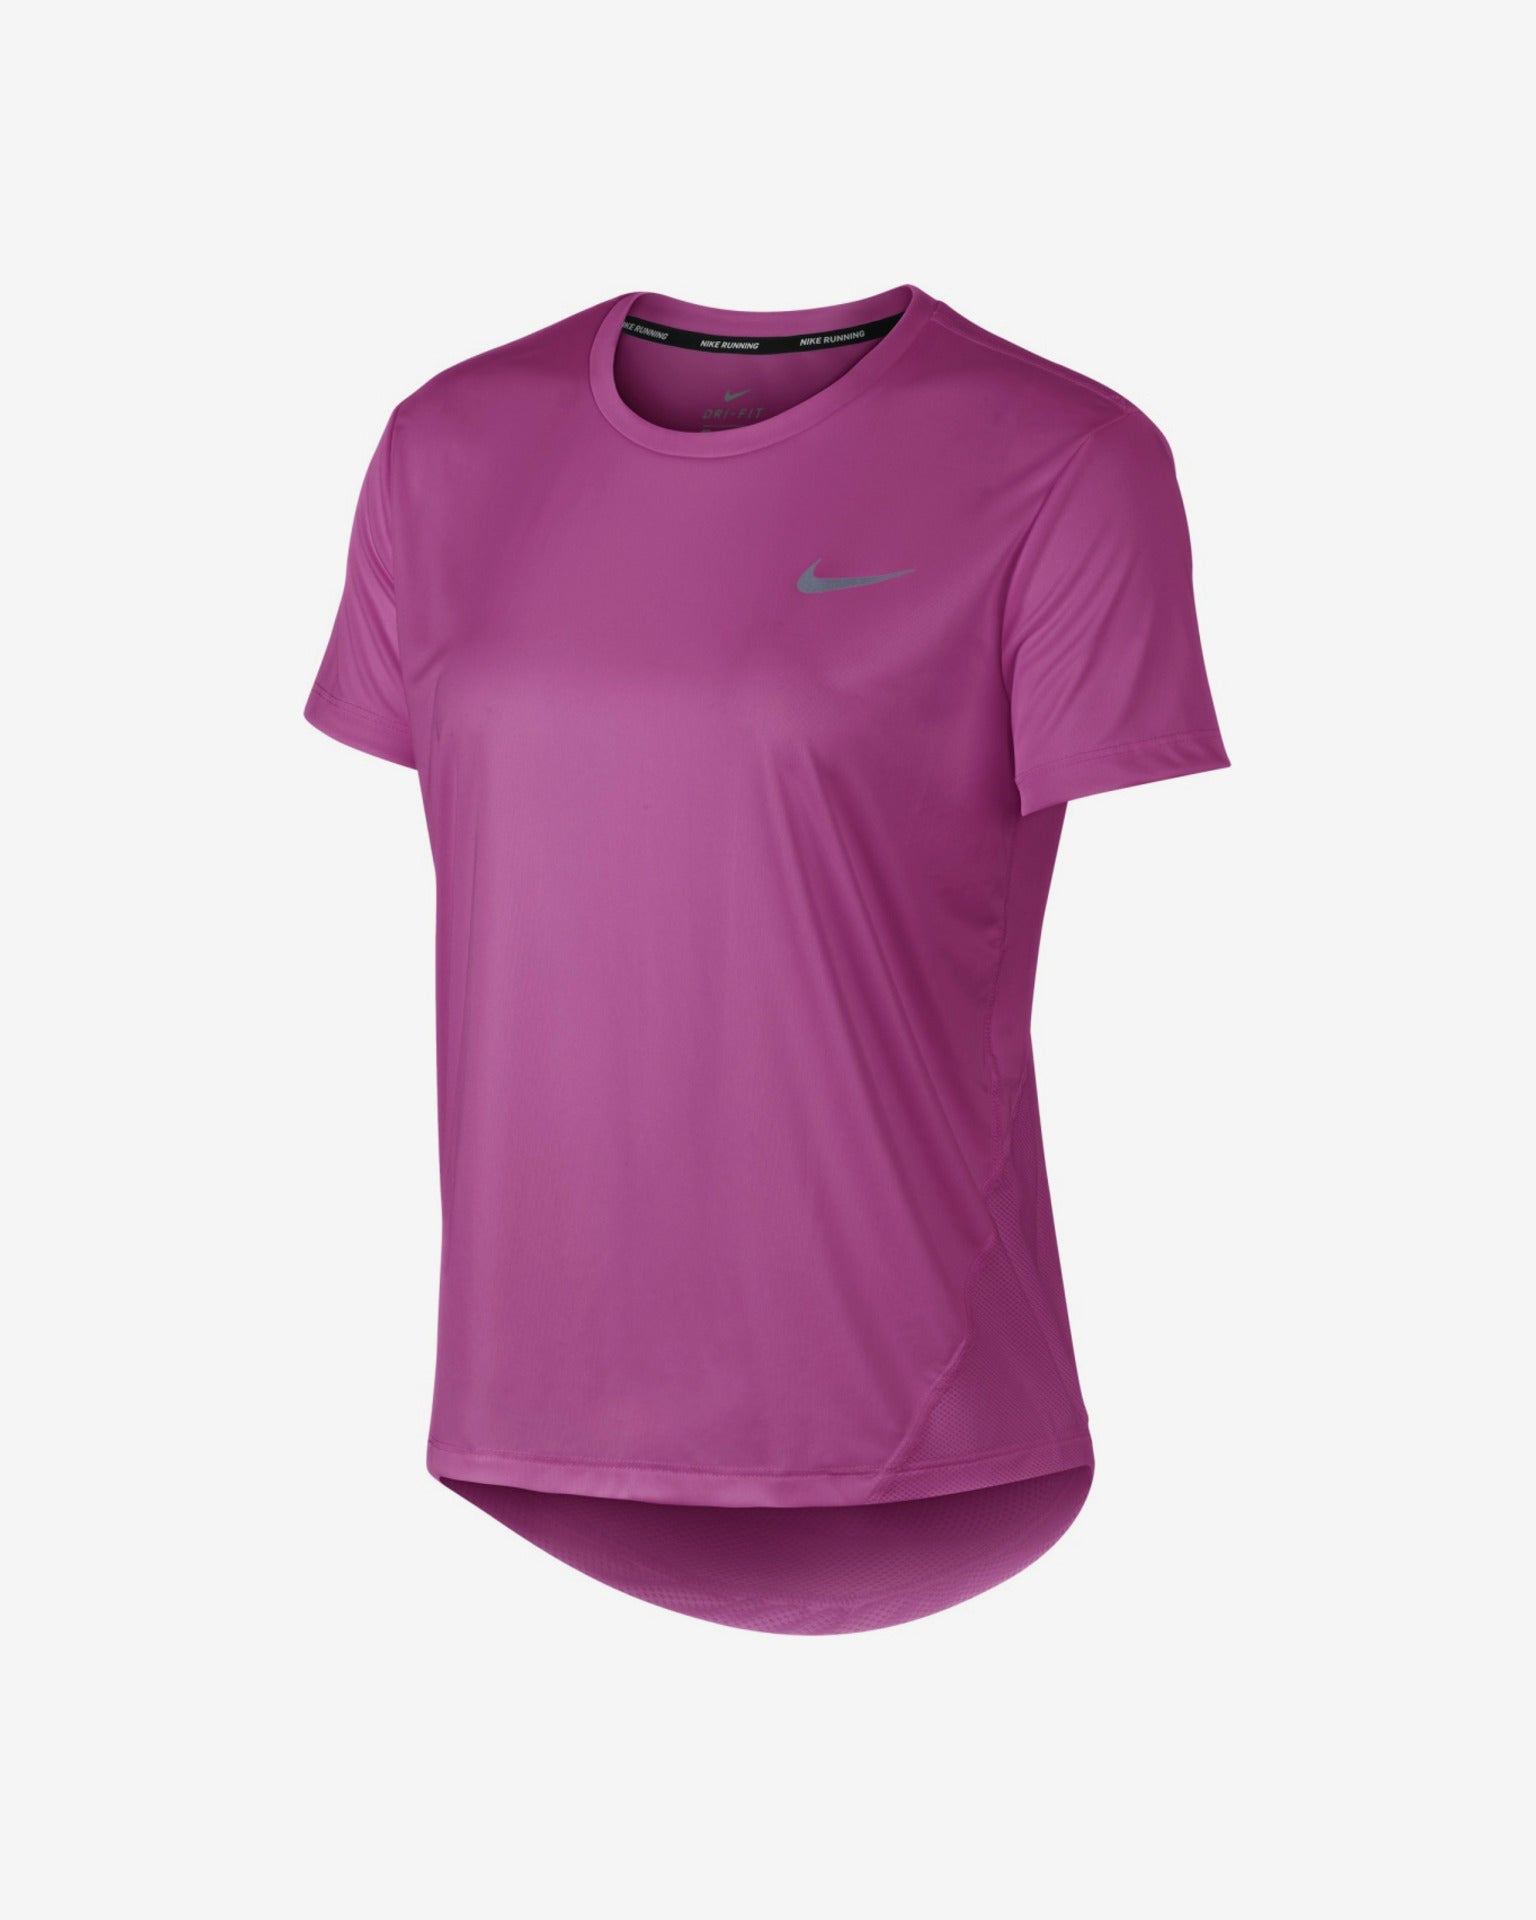 judío Agarrar Estrictamente Women's Miler Top SS (623 - berry pink/reflective silver) — TC Running Co